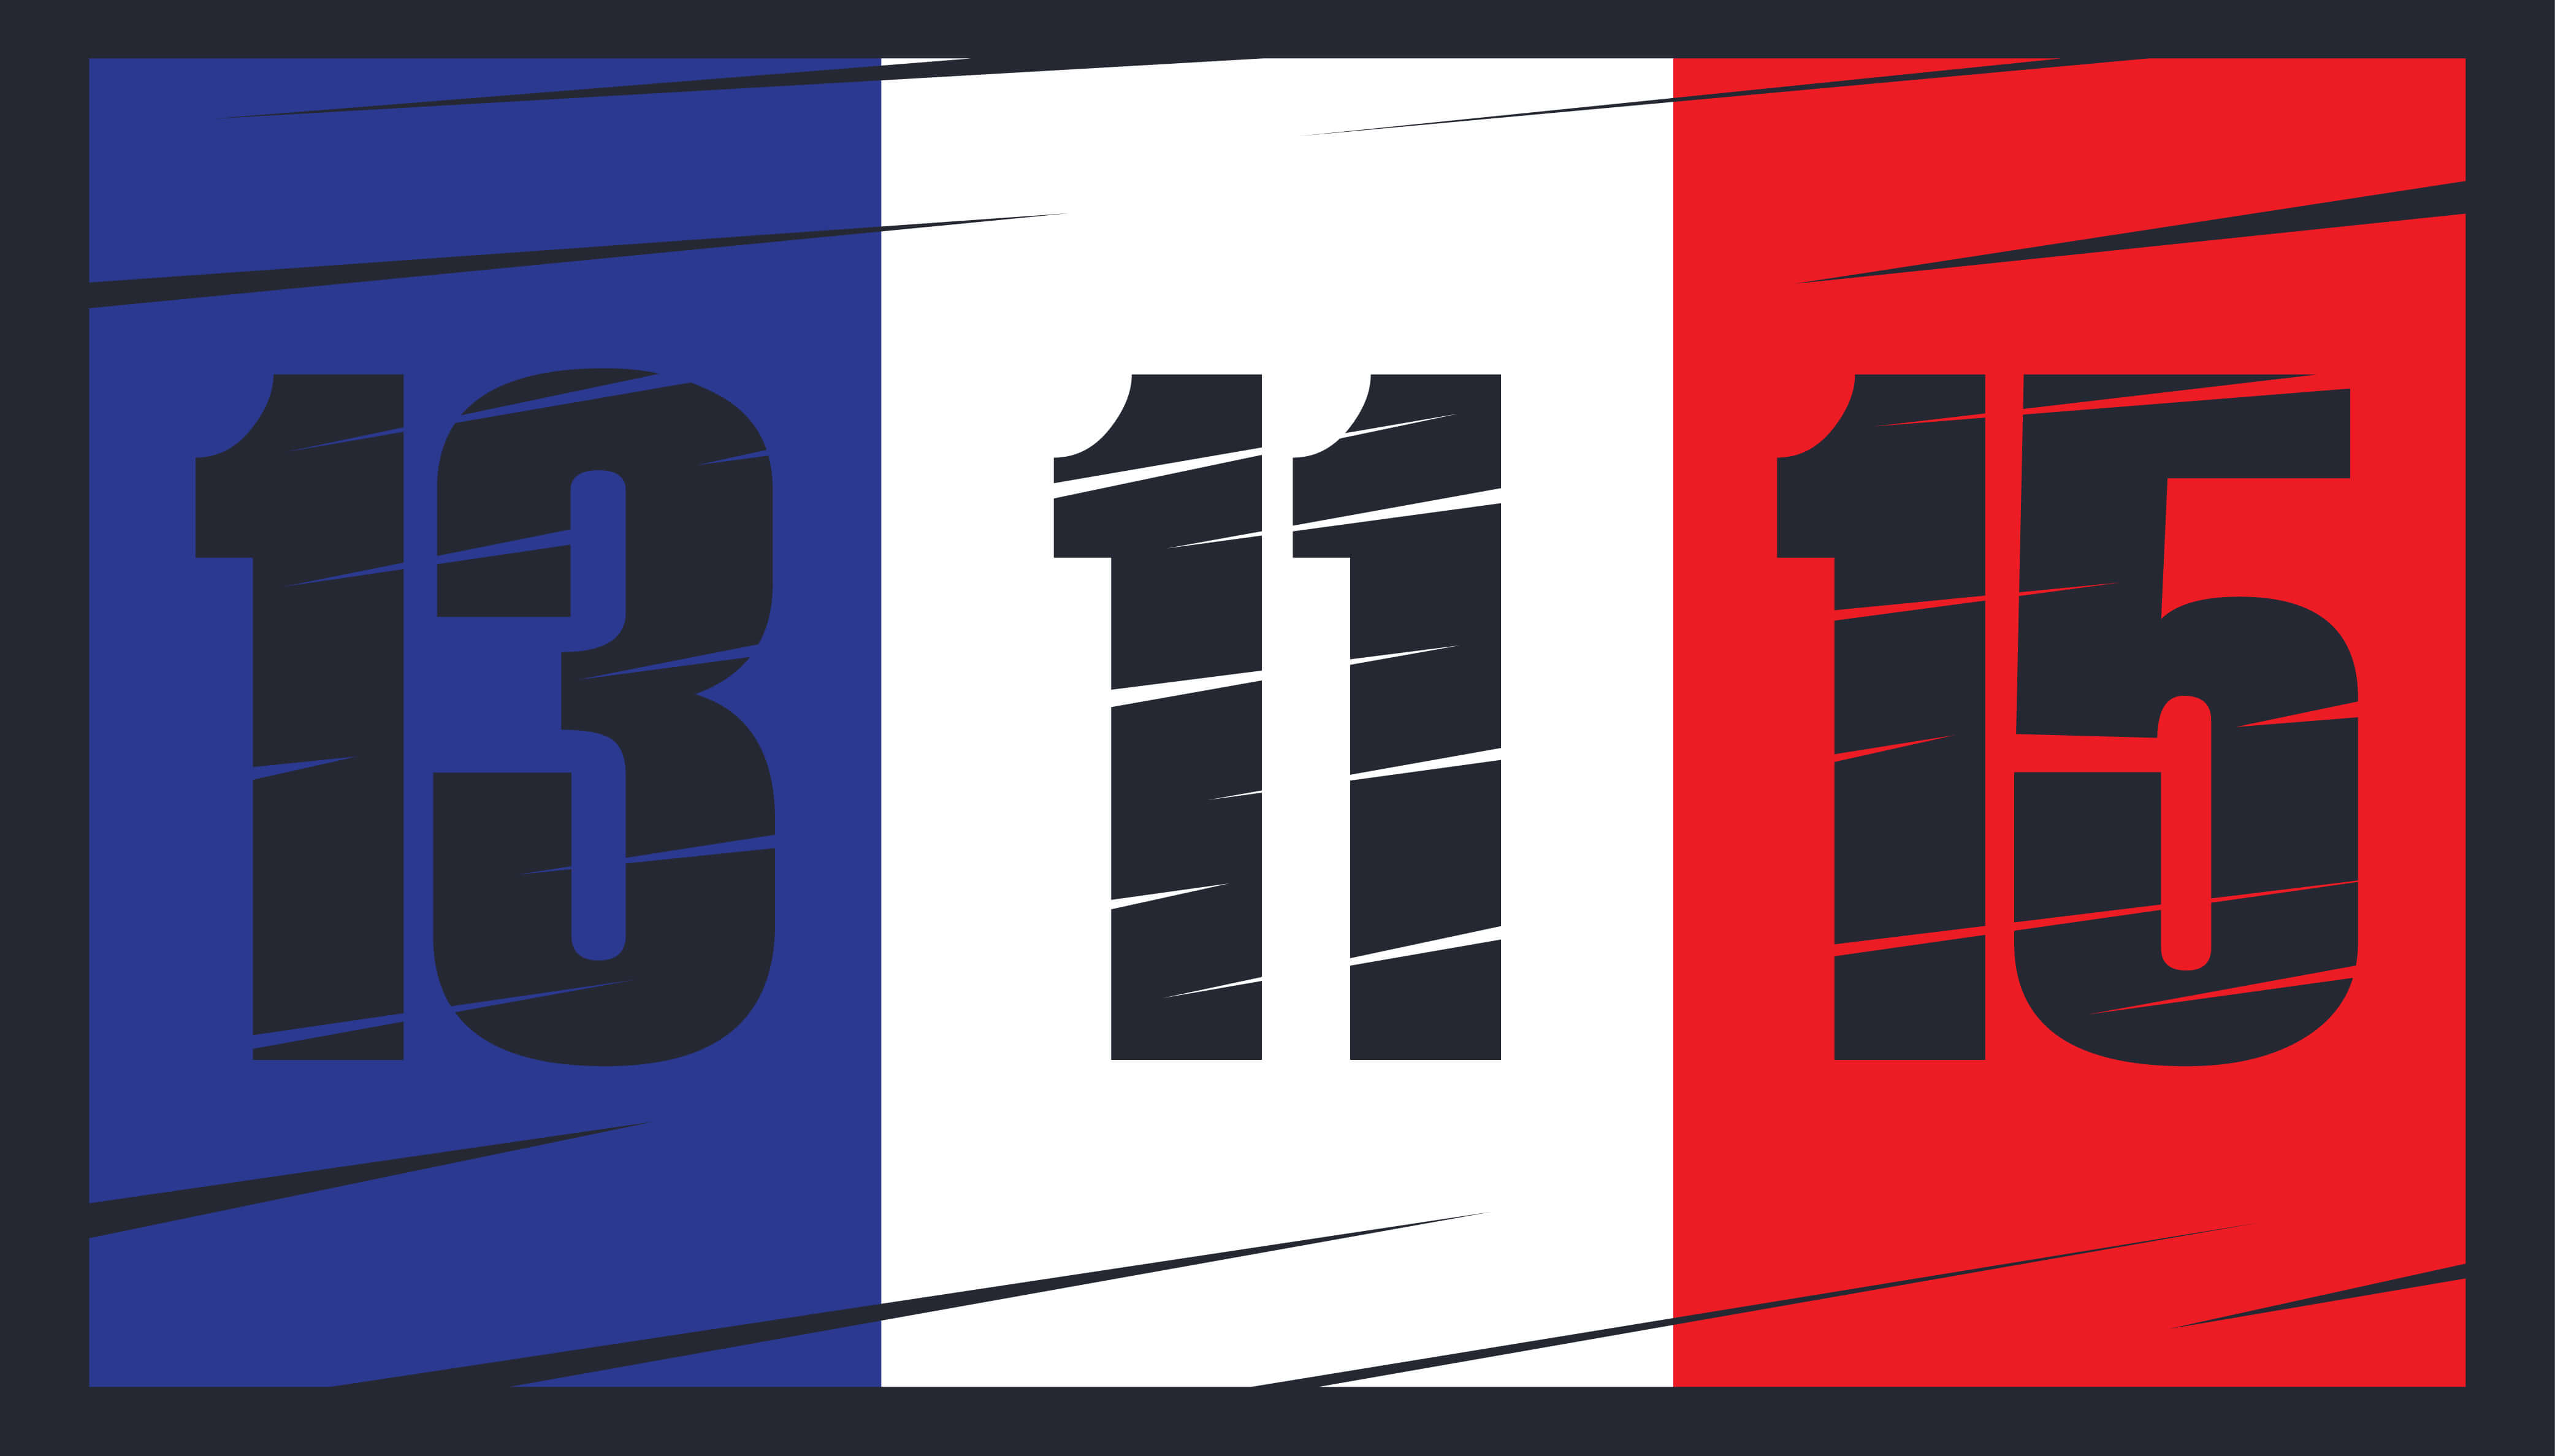 דגל צרפת על רקע שחור לאות אבל, והתאריך בו התרחש הטבח במספר אתרים בצפון פריס כמעט בו זמנית, 13/11/15. איור: shutterstock